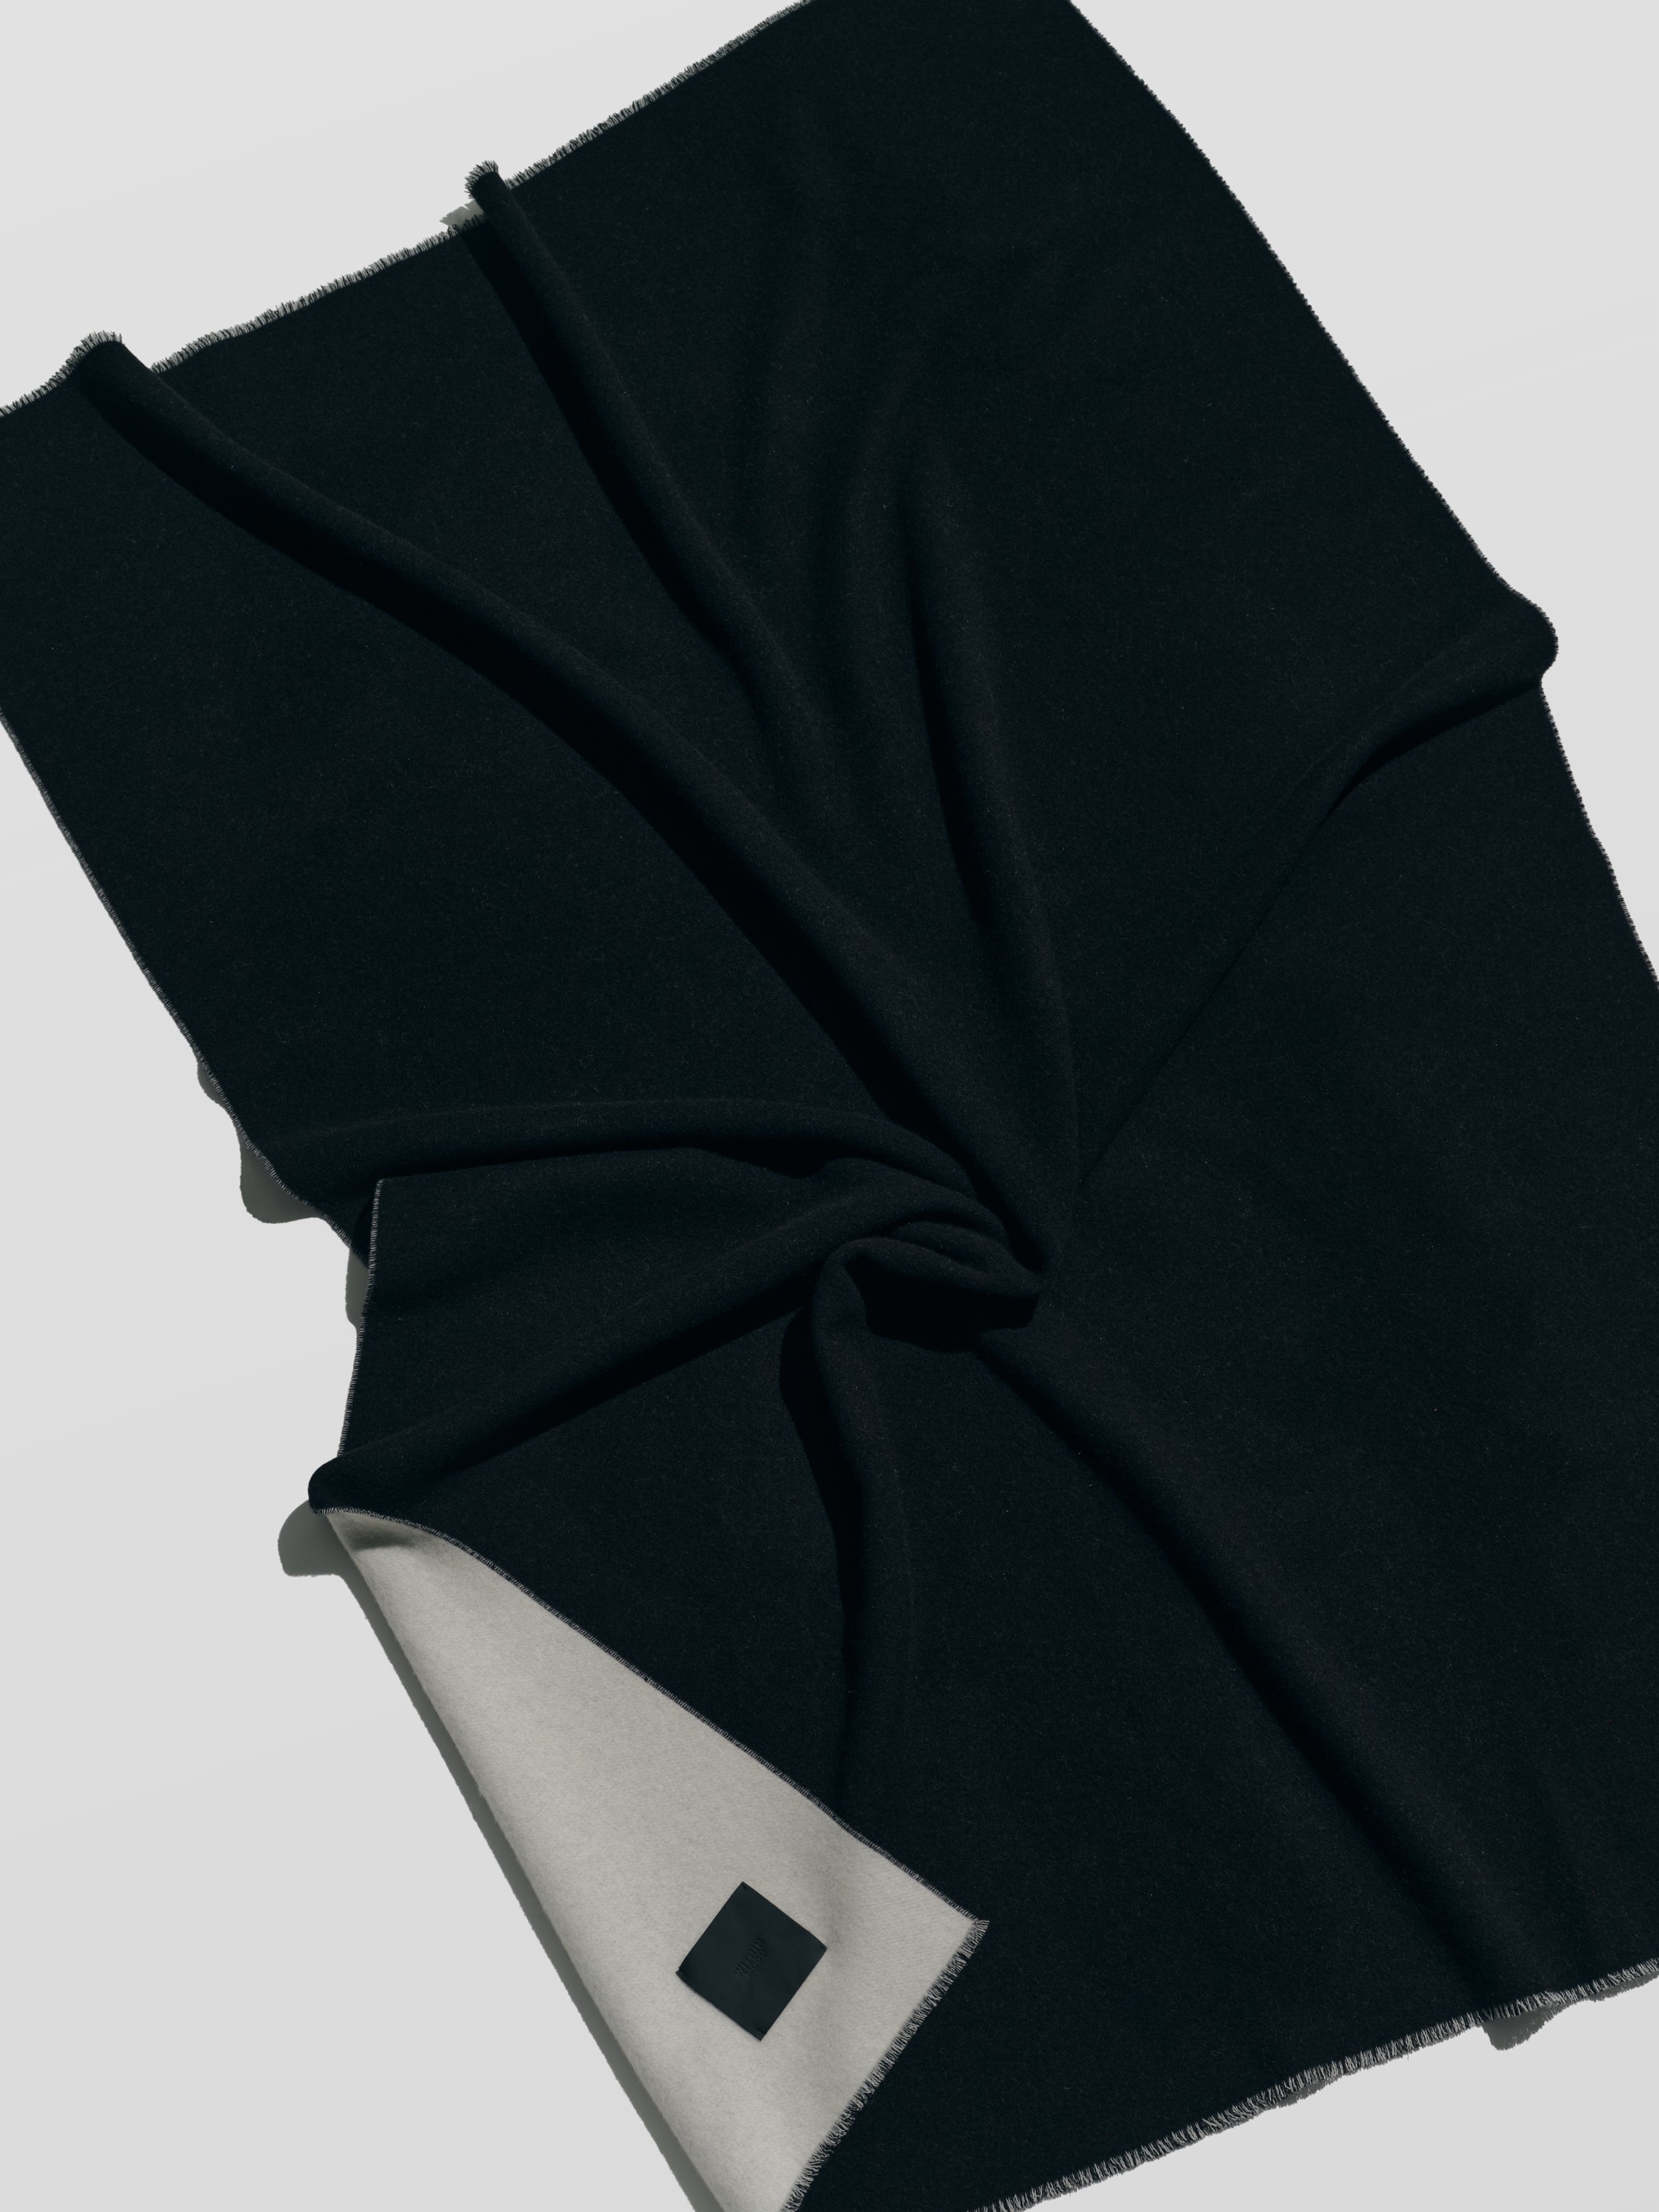 Blanket, offwhite/black